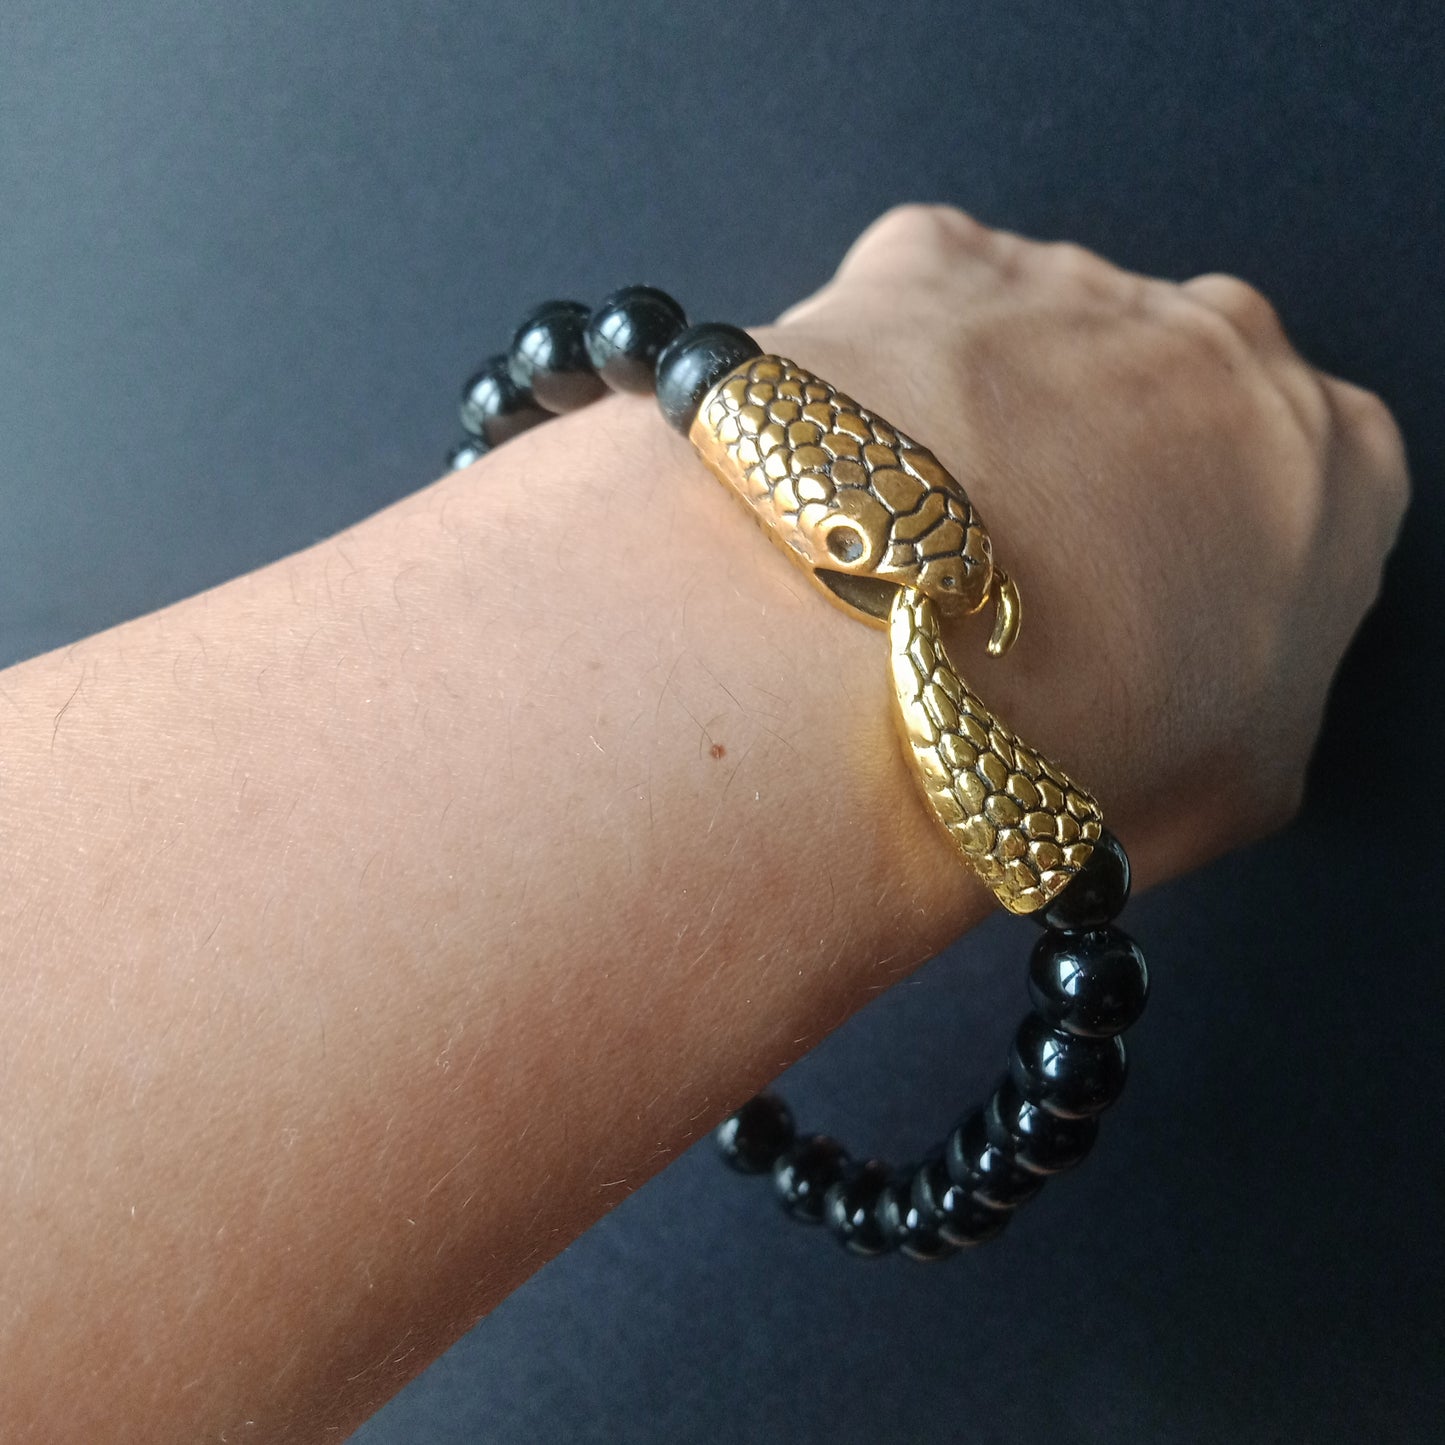 Ouroboros onyx bracelet